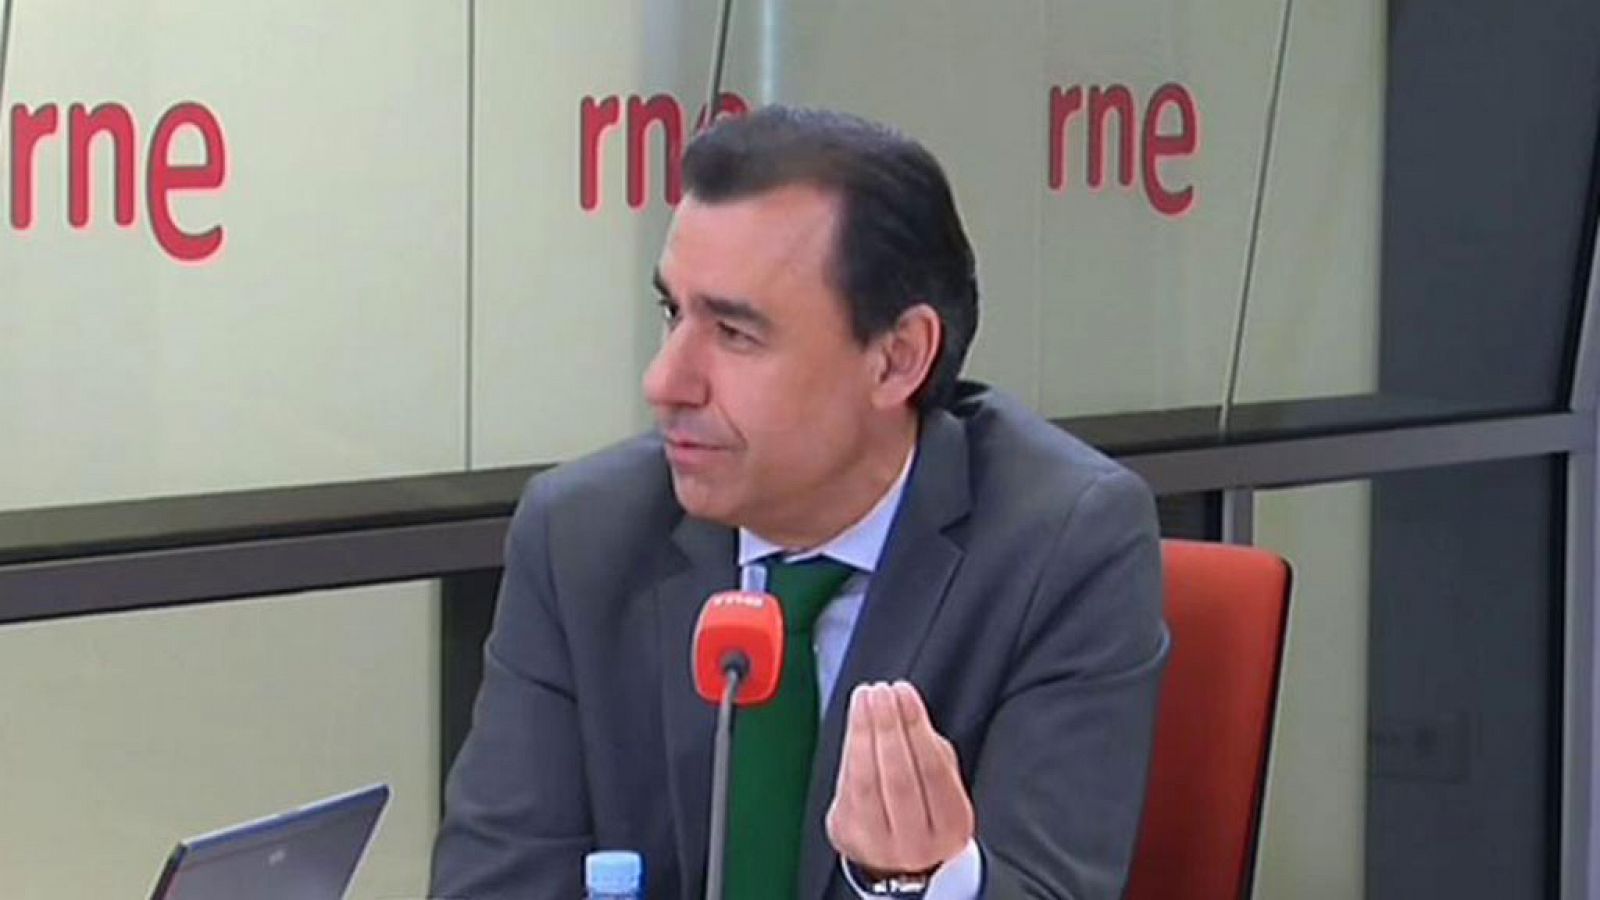 Las mañanas de RNE - Martínez-Maíllo (PP): "Hace mucho tiempo que no entendemos a Aznar cuando habla" - Escuchar ahora